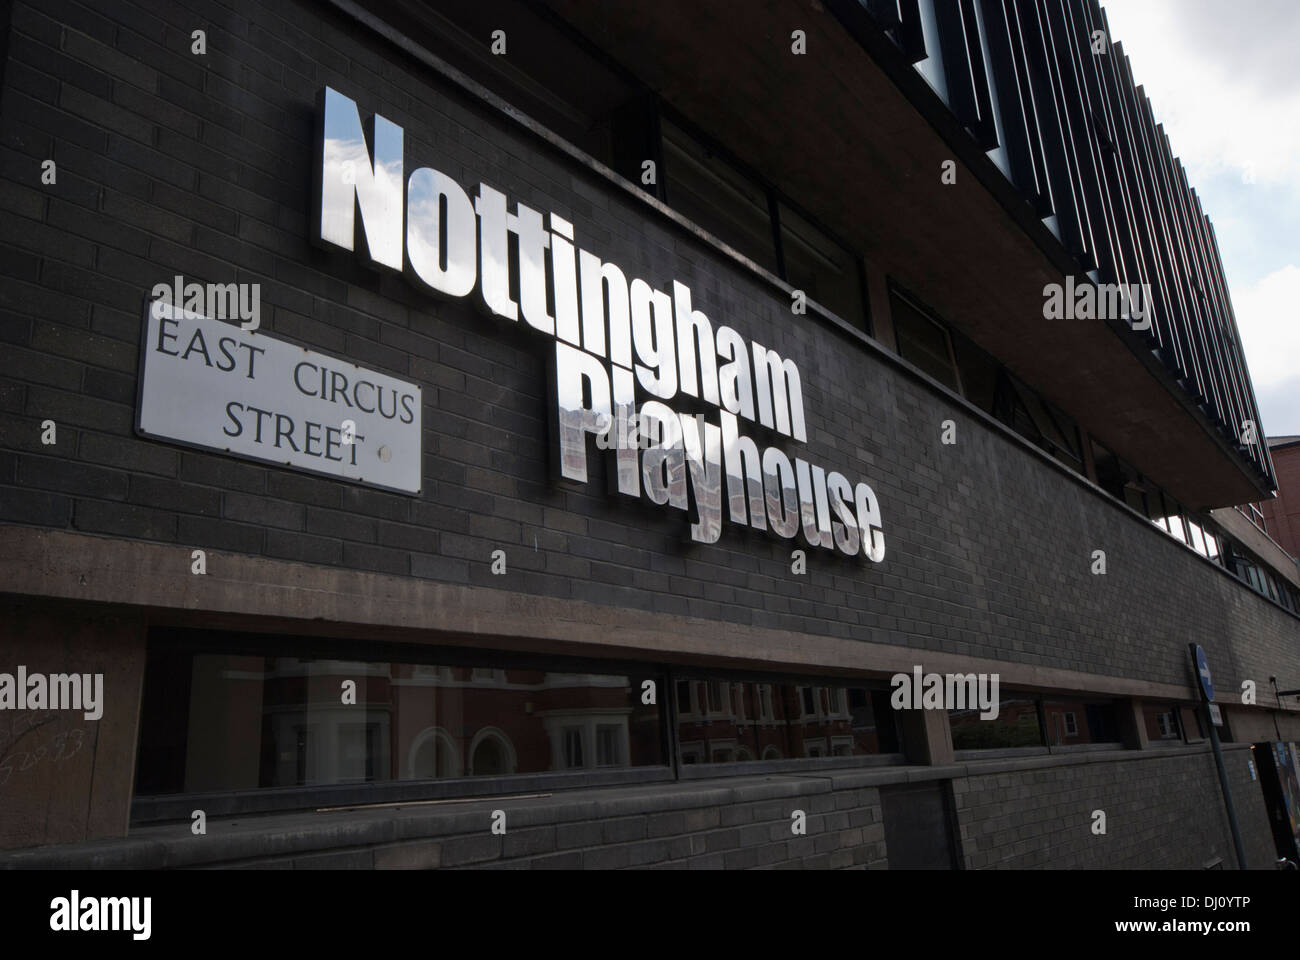 The Nottingham Playhouse,  Nottingham, England, UK. Stock Photo